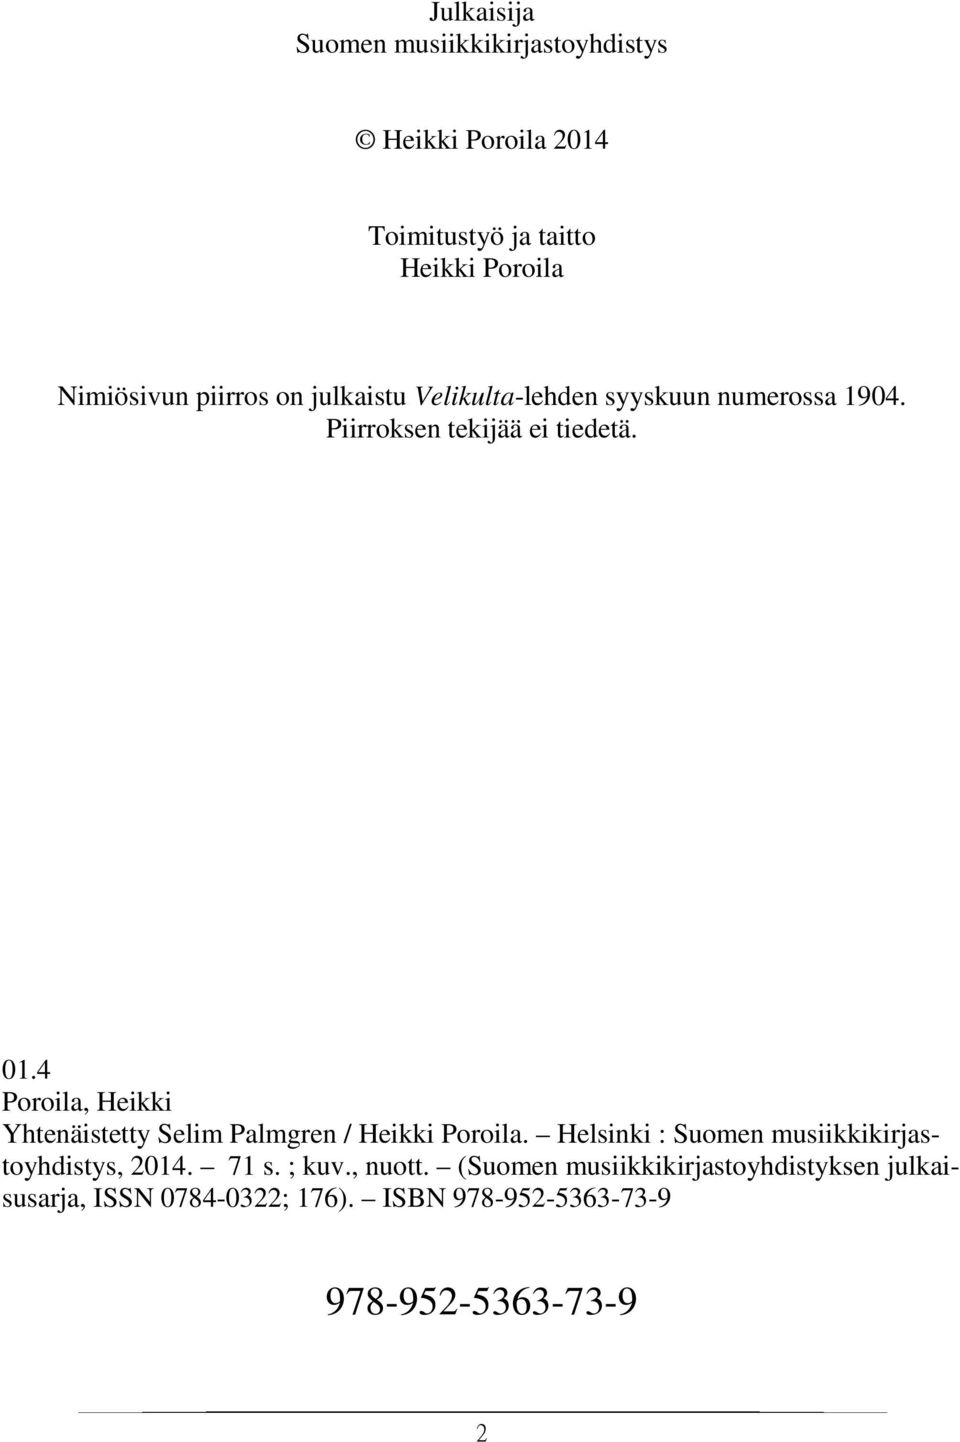 4 Poroila, Heikki Yhtenäistetty Selim Palmgren / Heikki Poroila. Helsinki : Suomen musiikkikirjastoyhdistys, 2014.